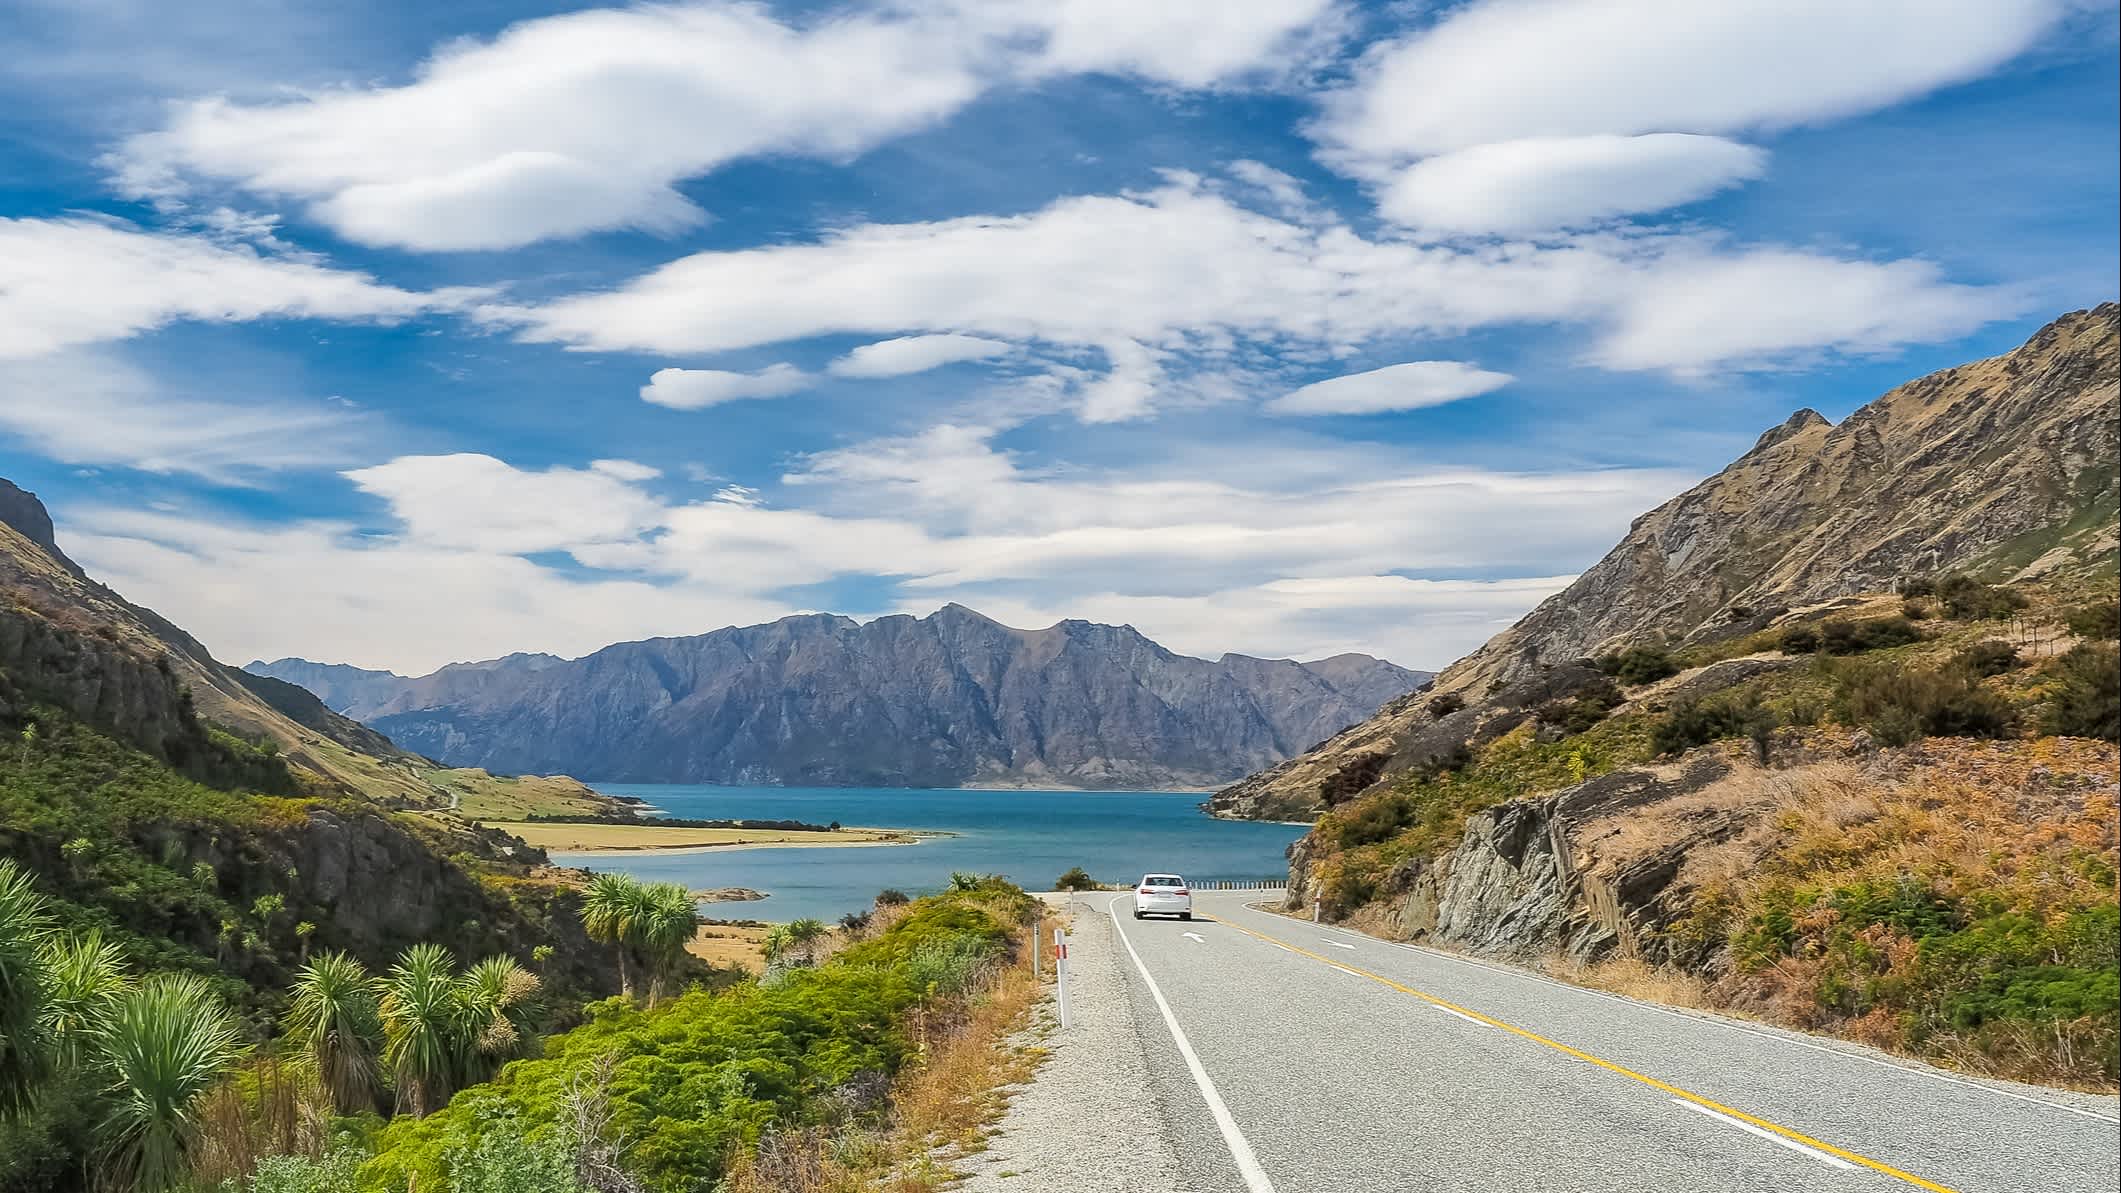 Voiture sur la route de The Neck Lookout bordée de montagnes avec vue du lac Hawea en arrière-plan, Nouvelle-Zélande